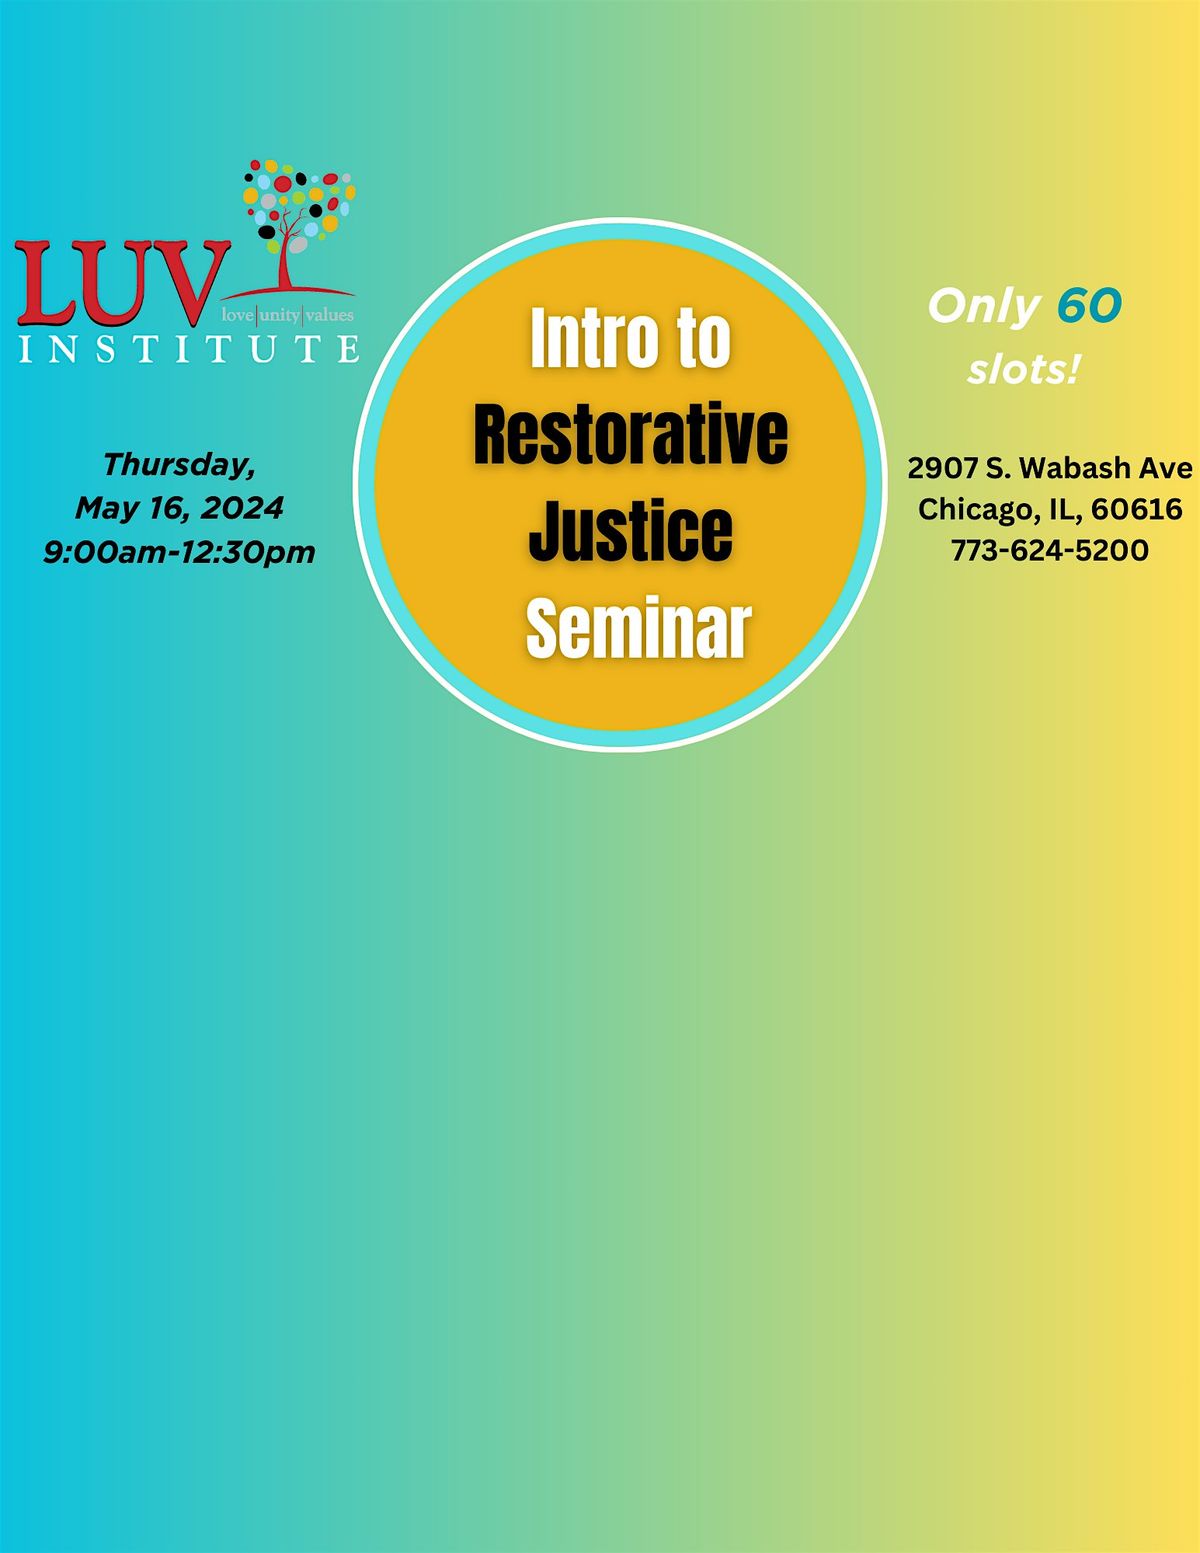 LUV Institute's: Intro to Restorative Justice Seminar